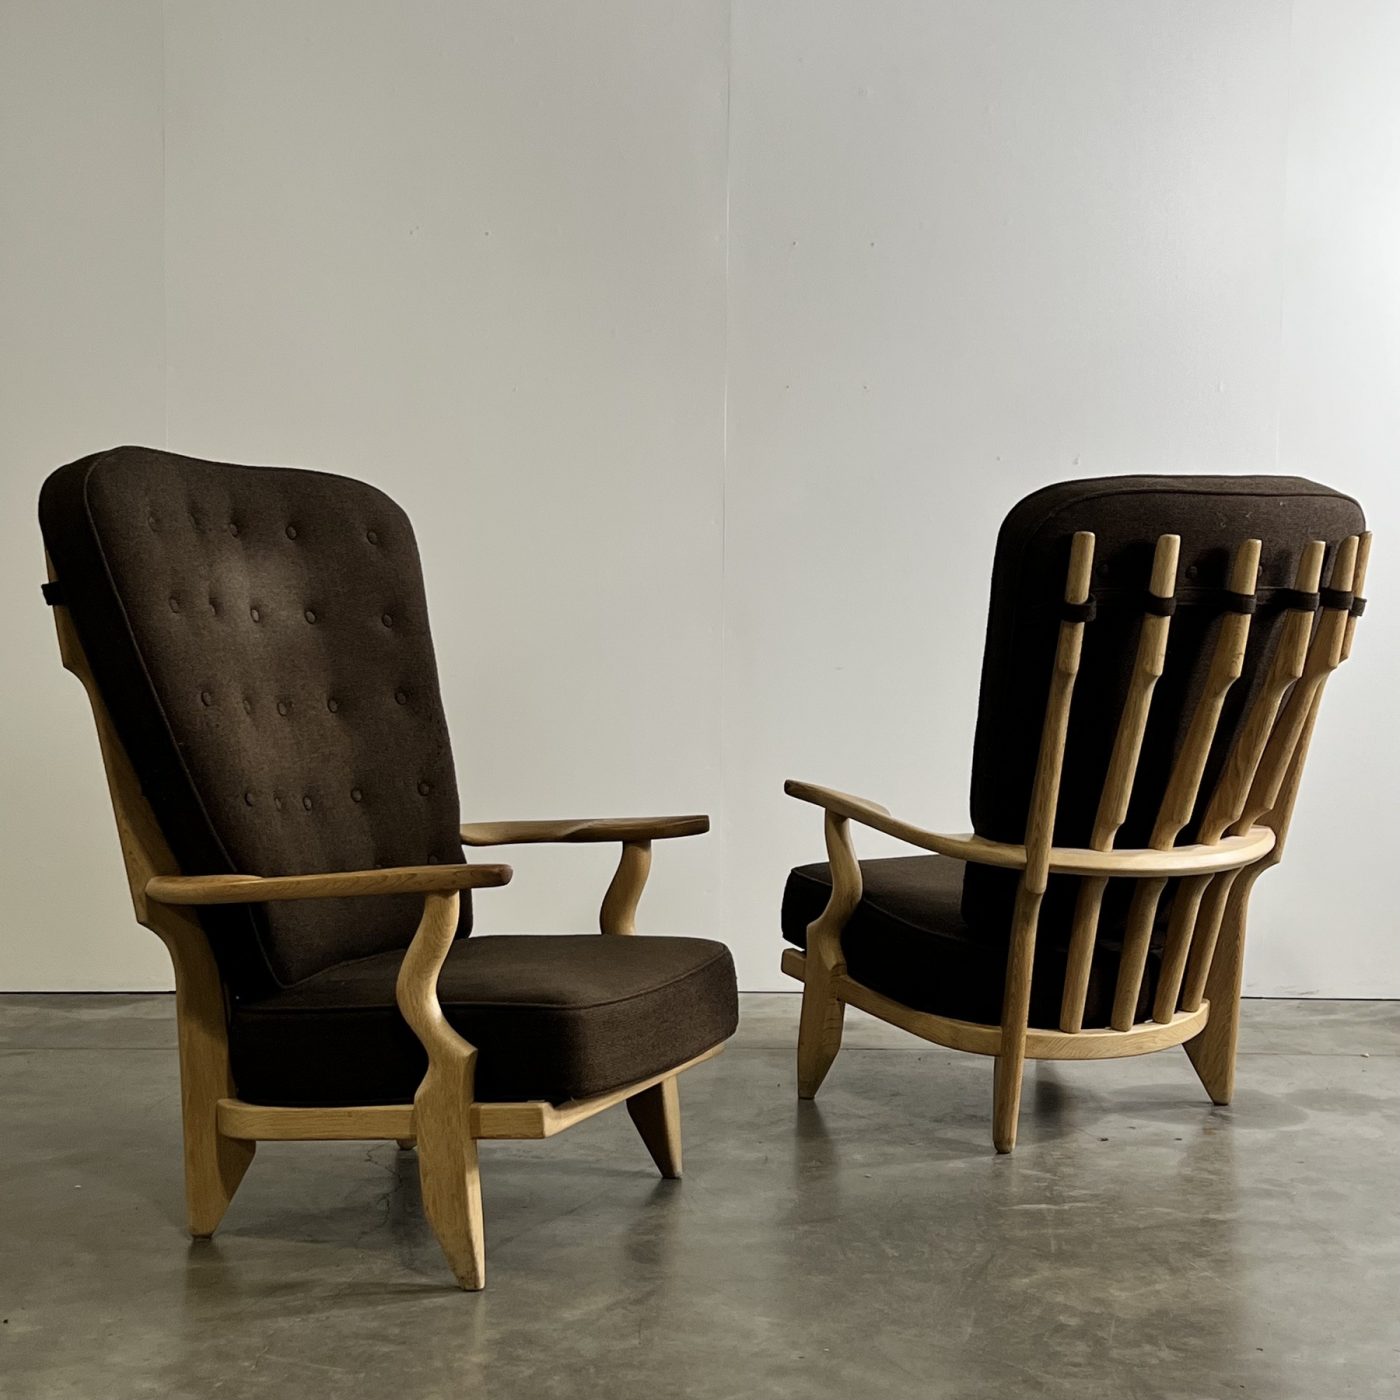 objet-vagabond-guillerme-armchairs0006